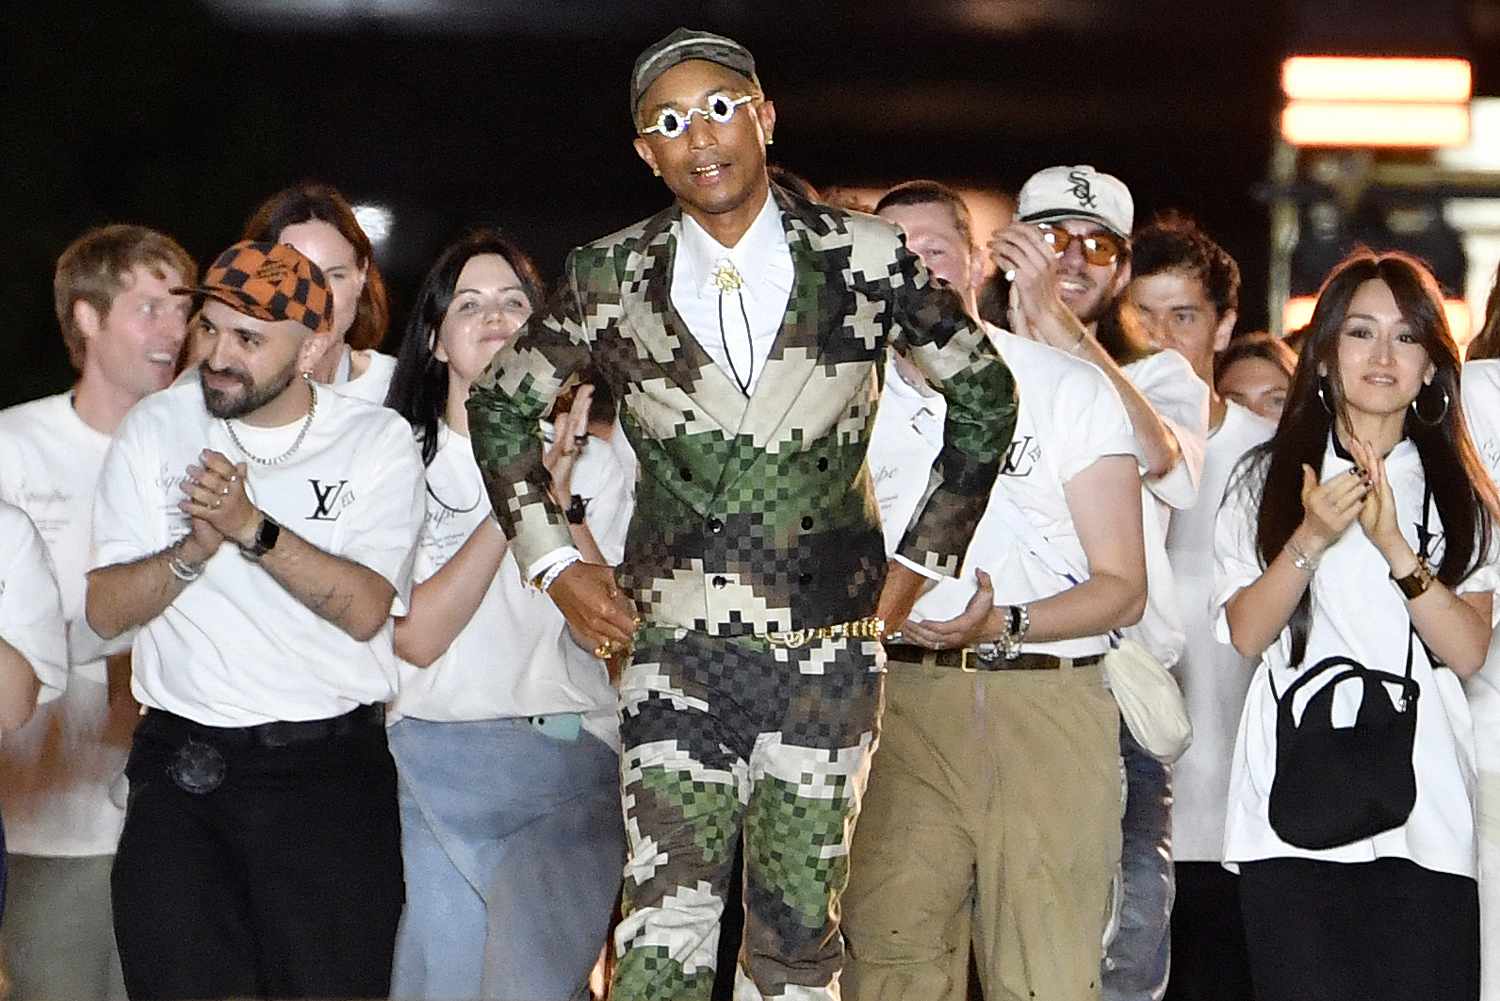 Lluvia de estrellas, estampado de damero pixelado y fin de fiesta con  actuación de Jay-Z: Pharrel Williams triunfa en París con su primera  colección para Louis Vuitton